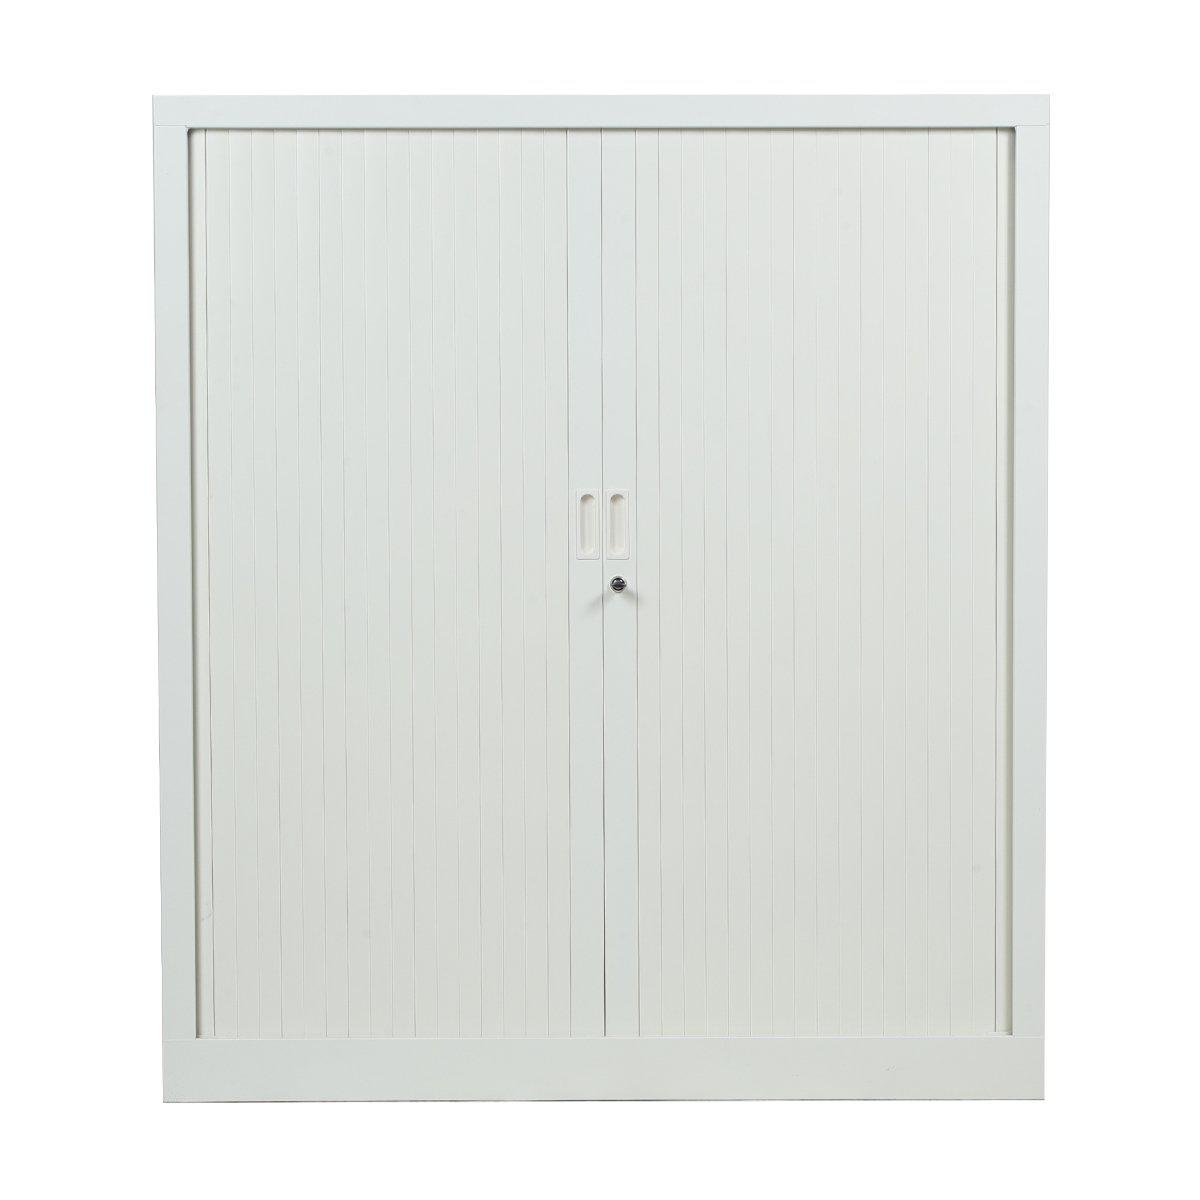 Armoire rideau basse occasion - Blanc - 100 x 45 x 135 cm-Bluedigo